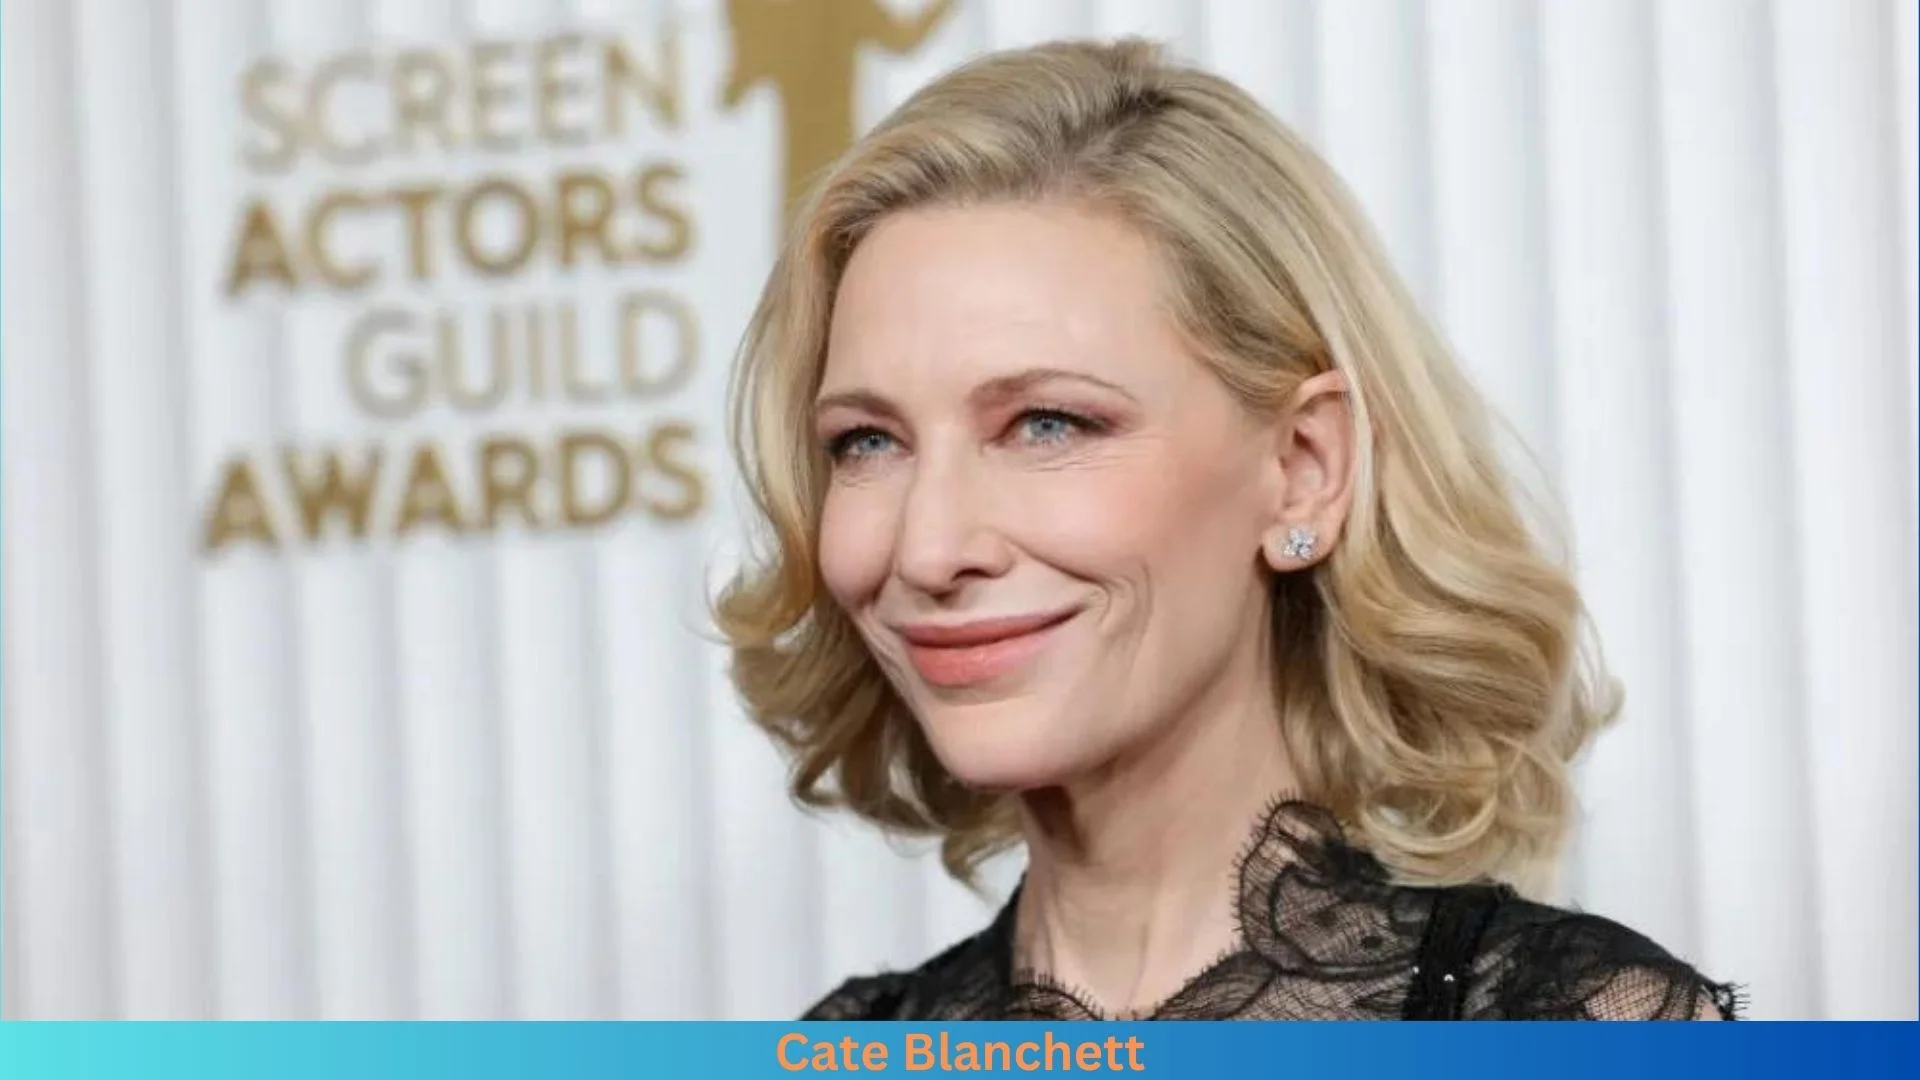 Net Worth of Cate Blanchett